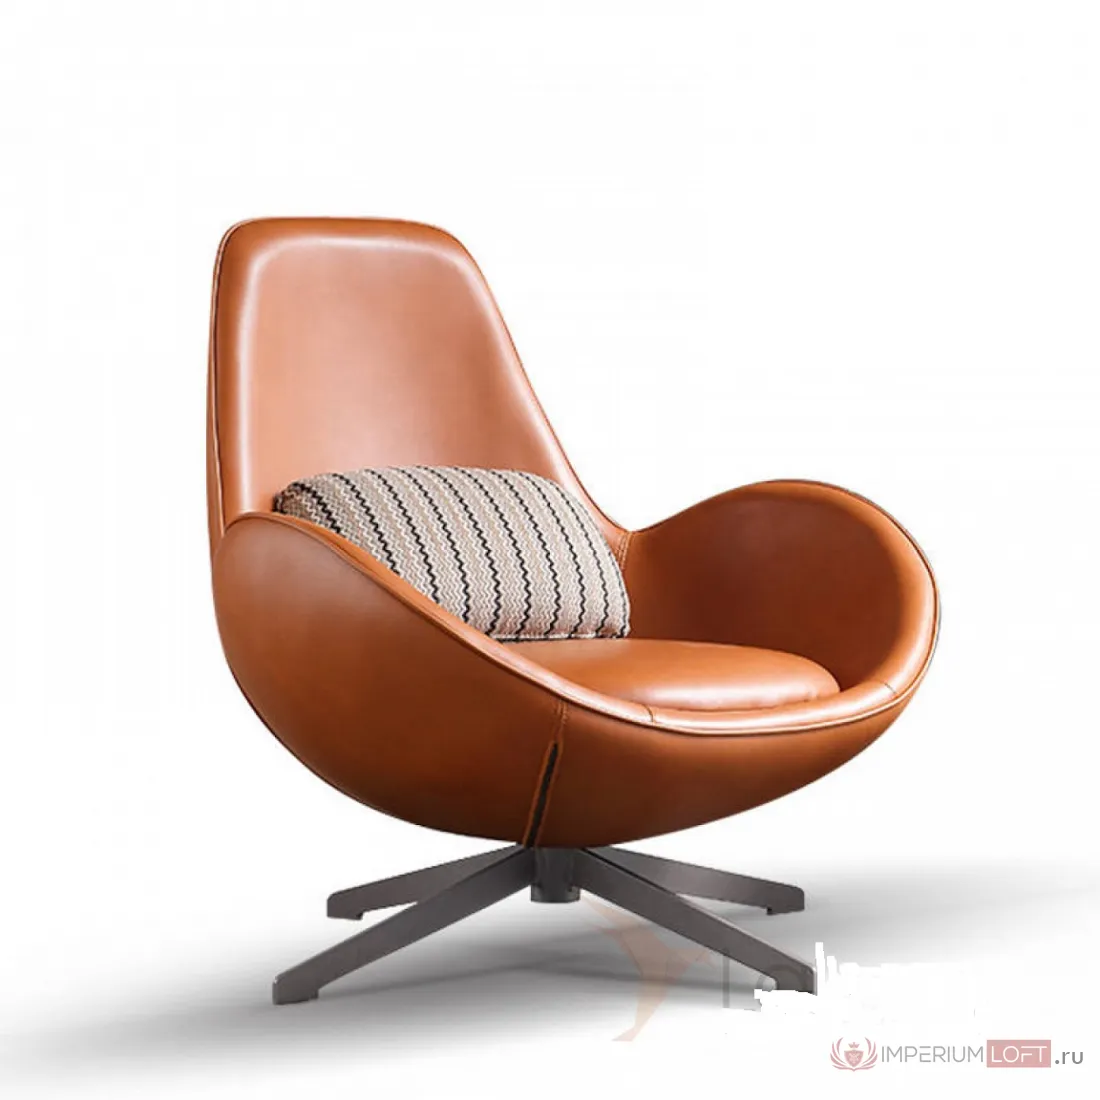 Дизайнерские стильные и элитные кресла для дома